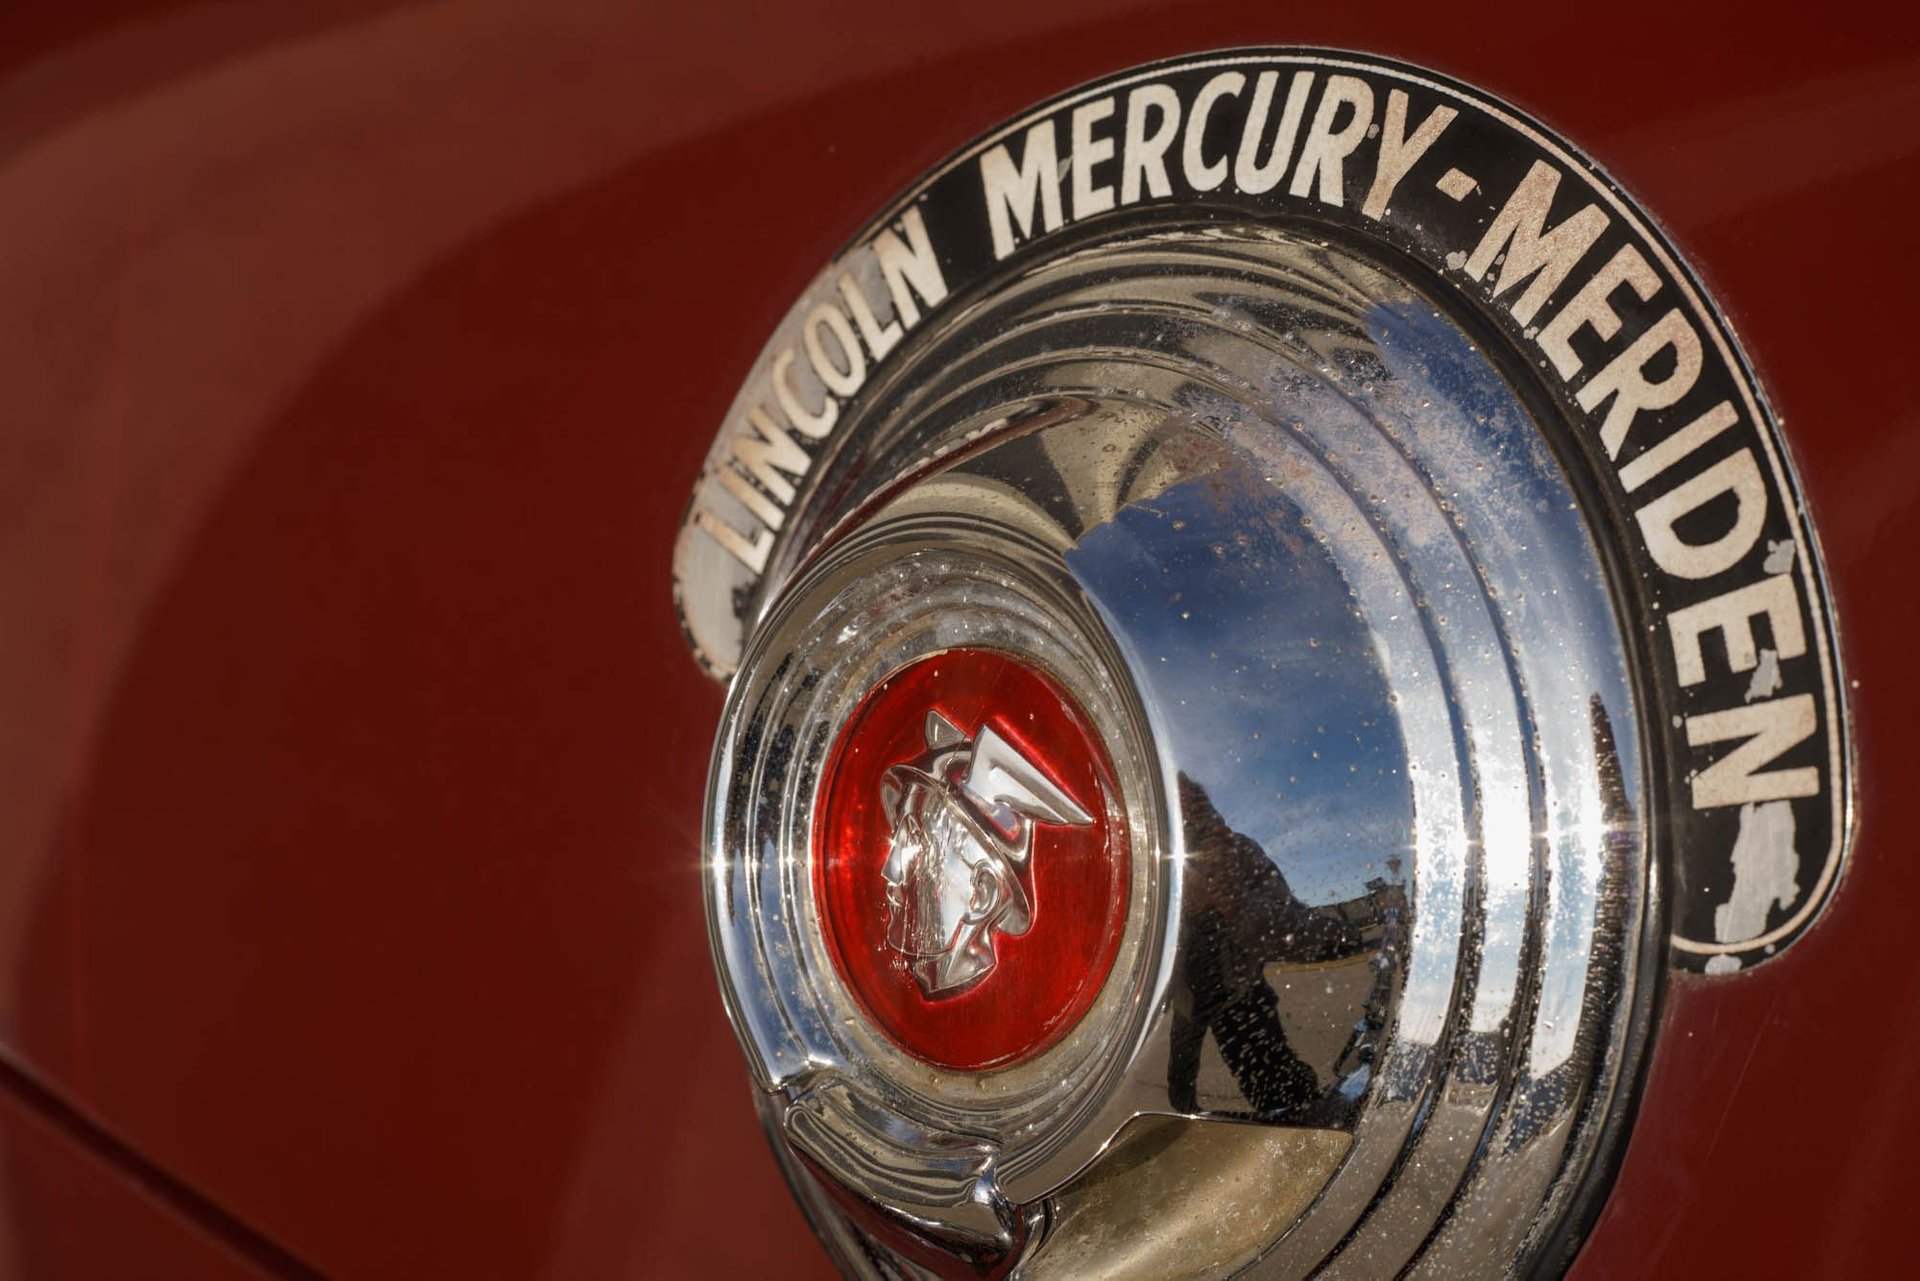 1952 mercury monterey